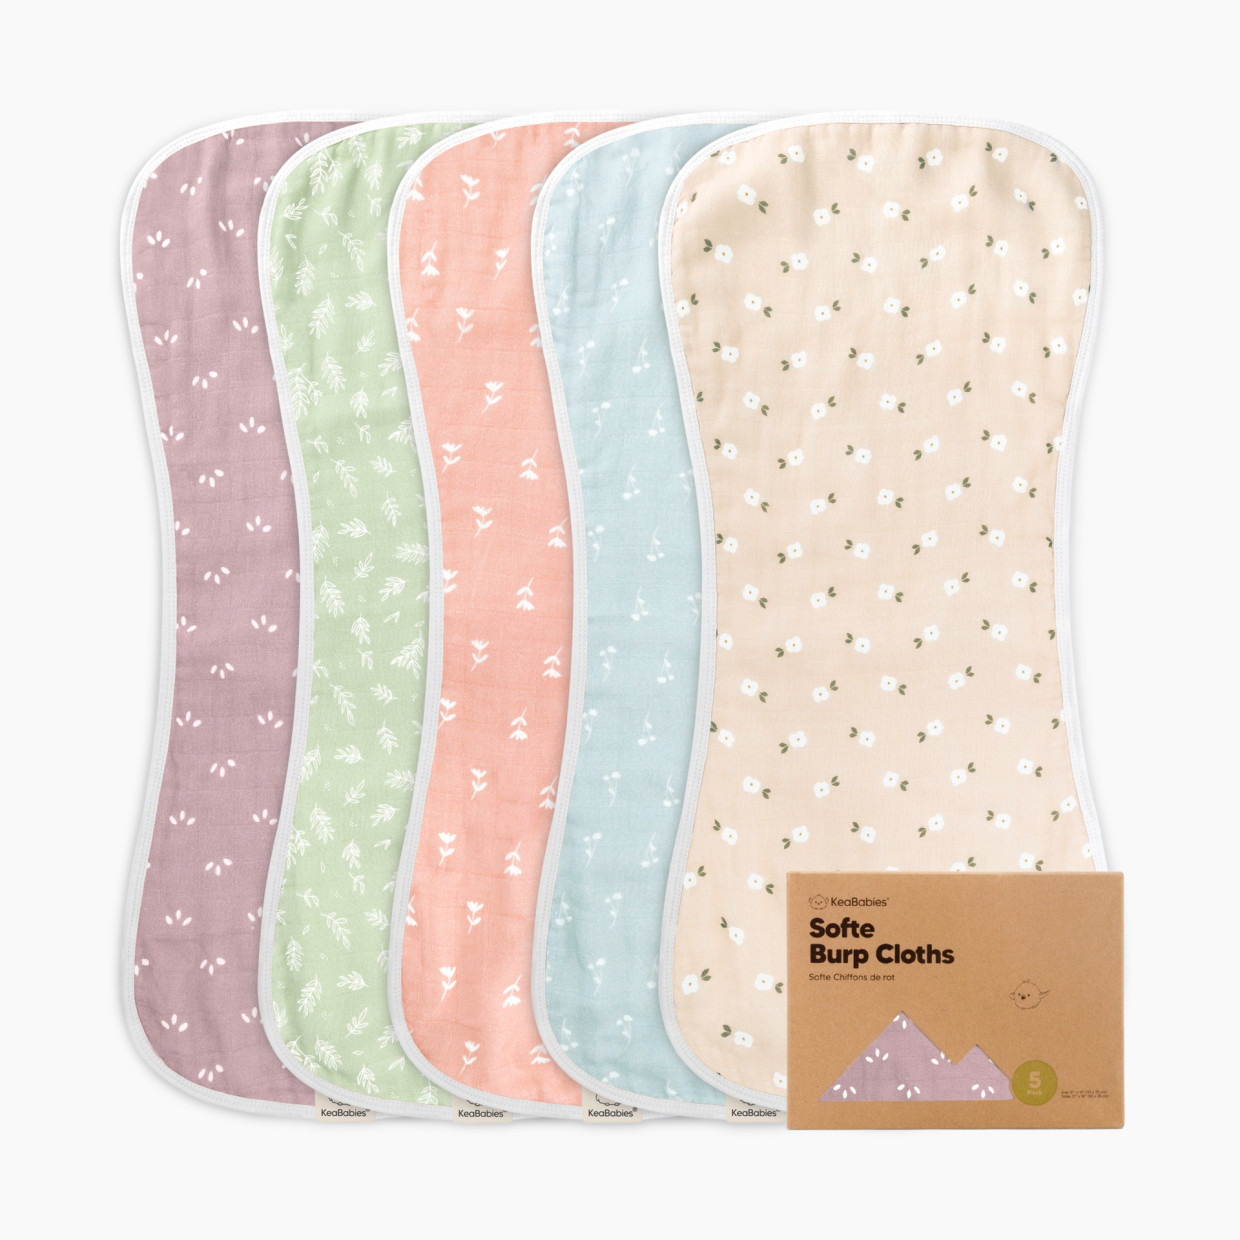 KeaBabies Softe Muslin Baby Burp Cloth - Blooms, 5.